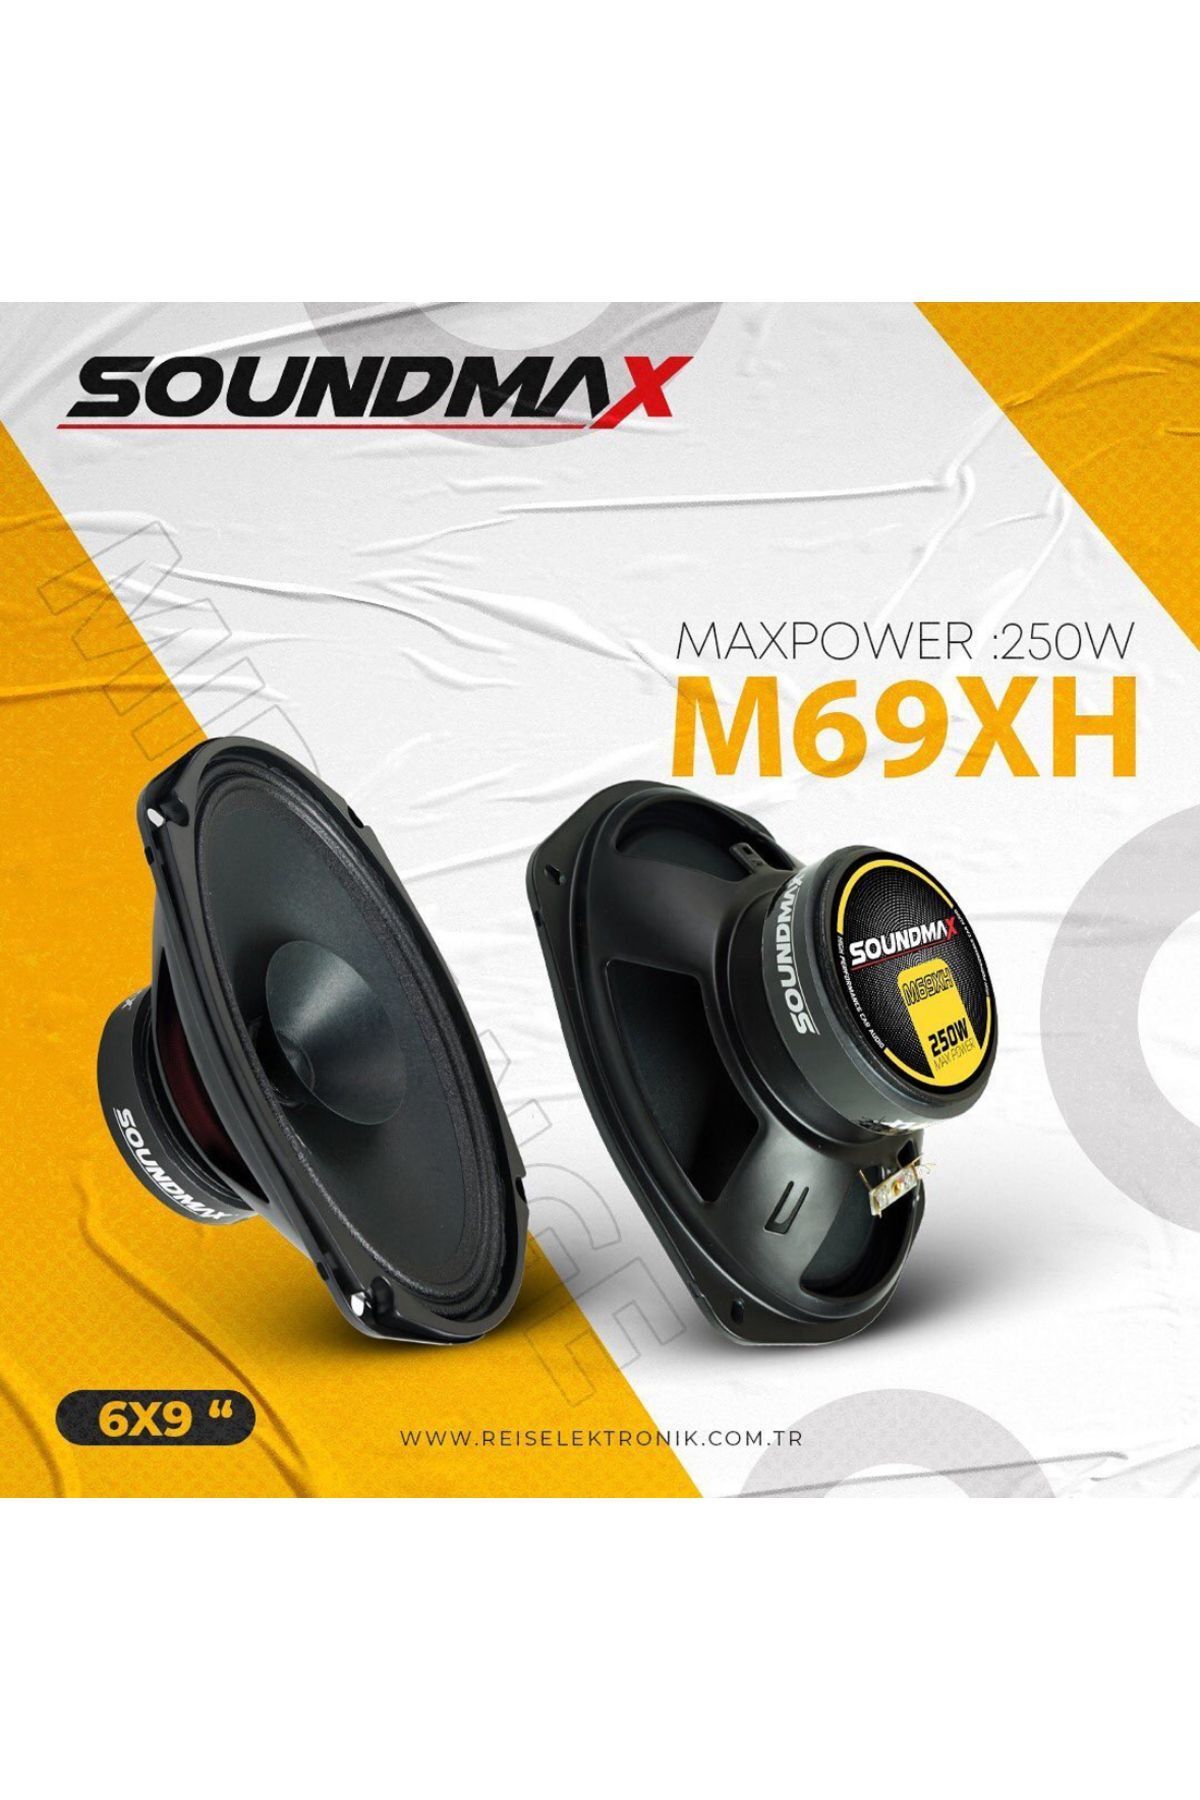 Soundmax Sx-m69xh Çifti 500wat-200w Rms Kapaklı 6x9 Oval Oto Midrange Hoparlör